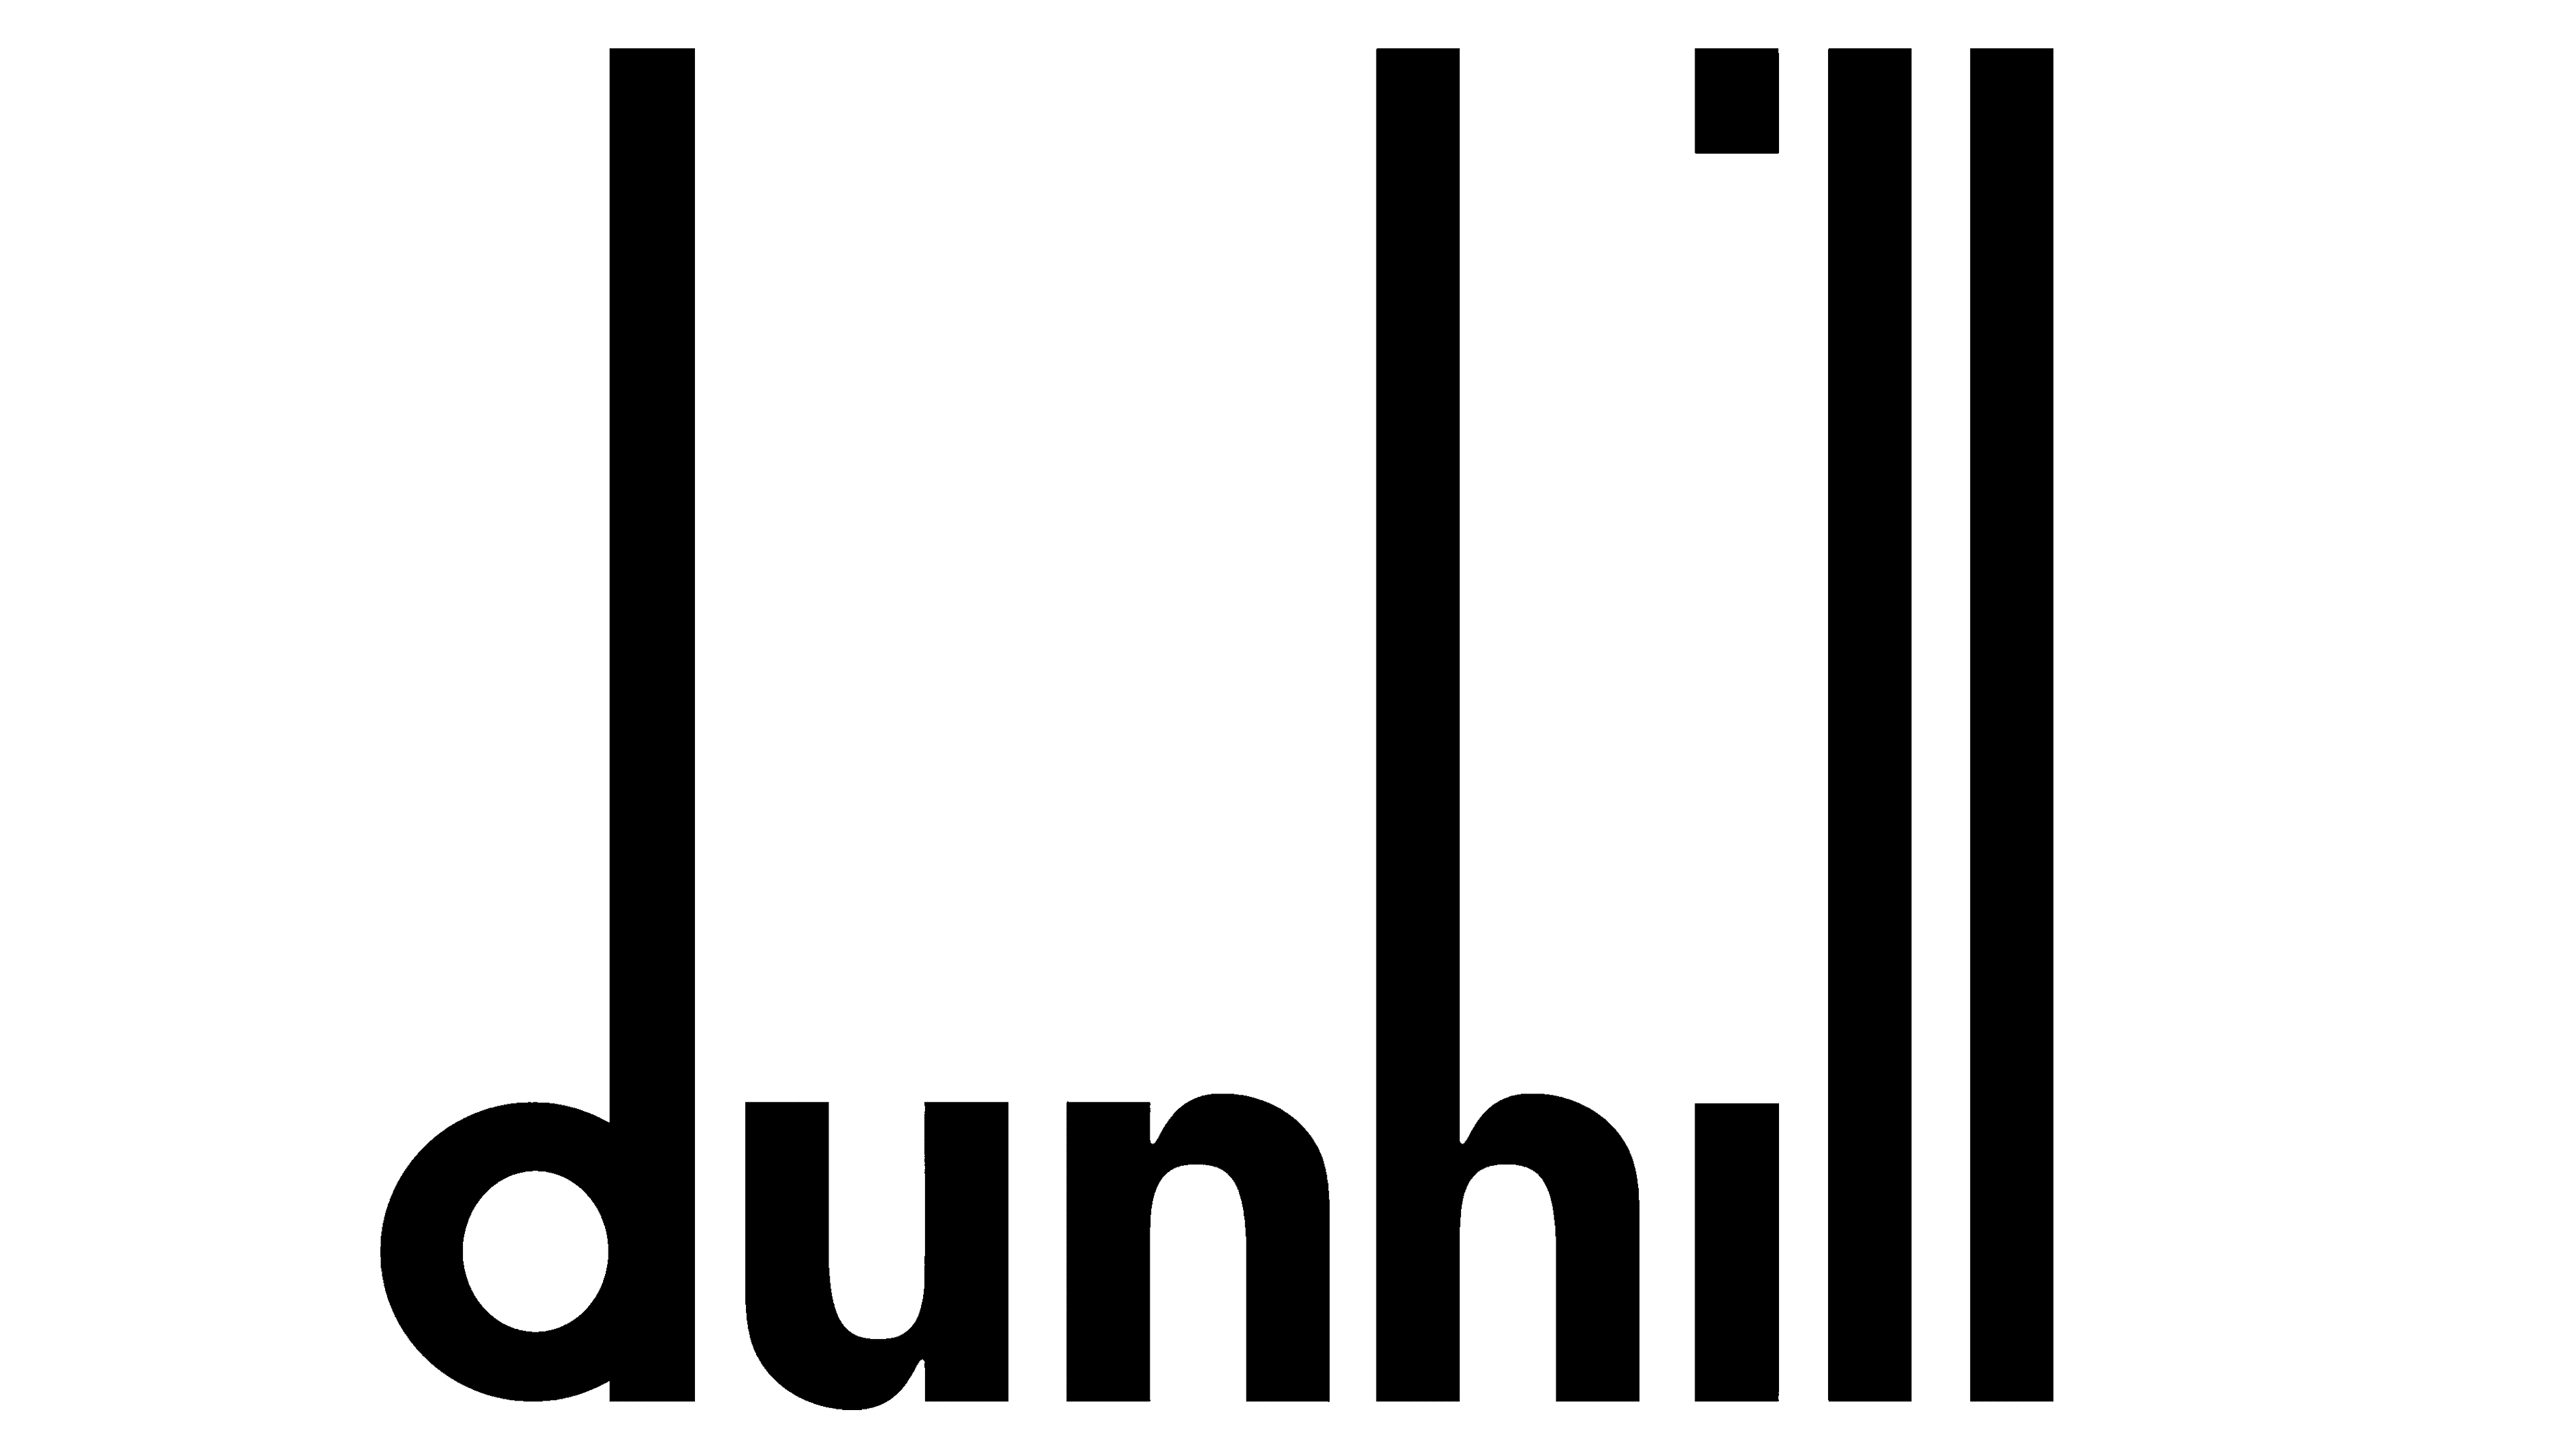 dunhill-logo